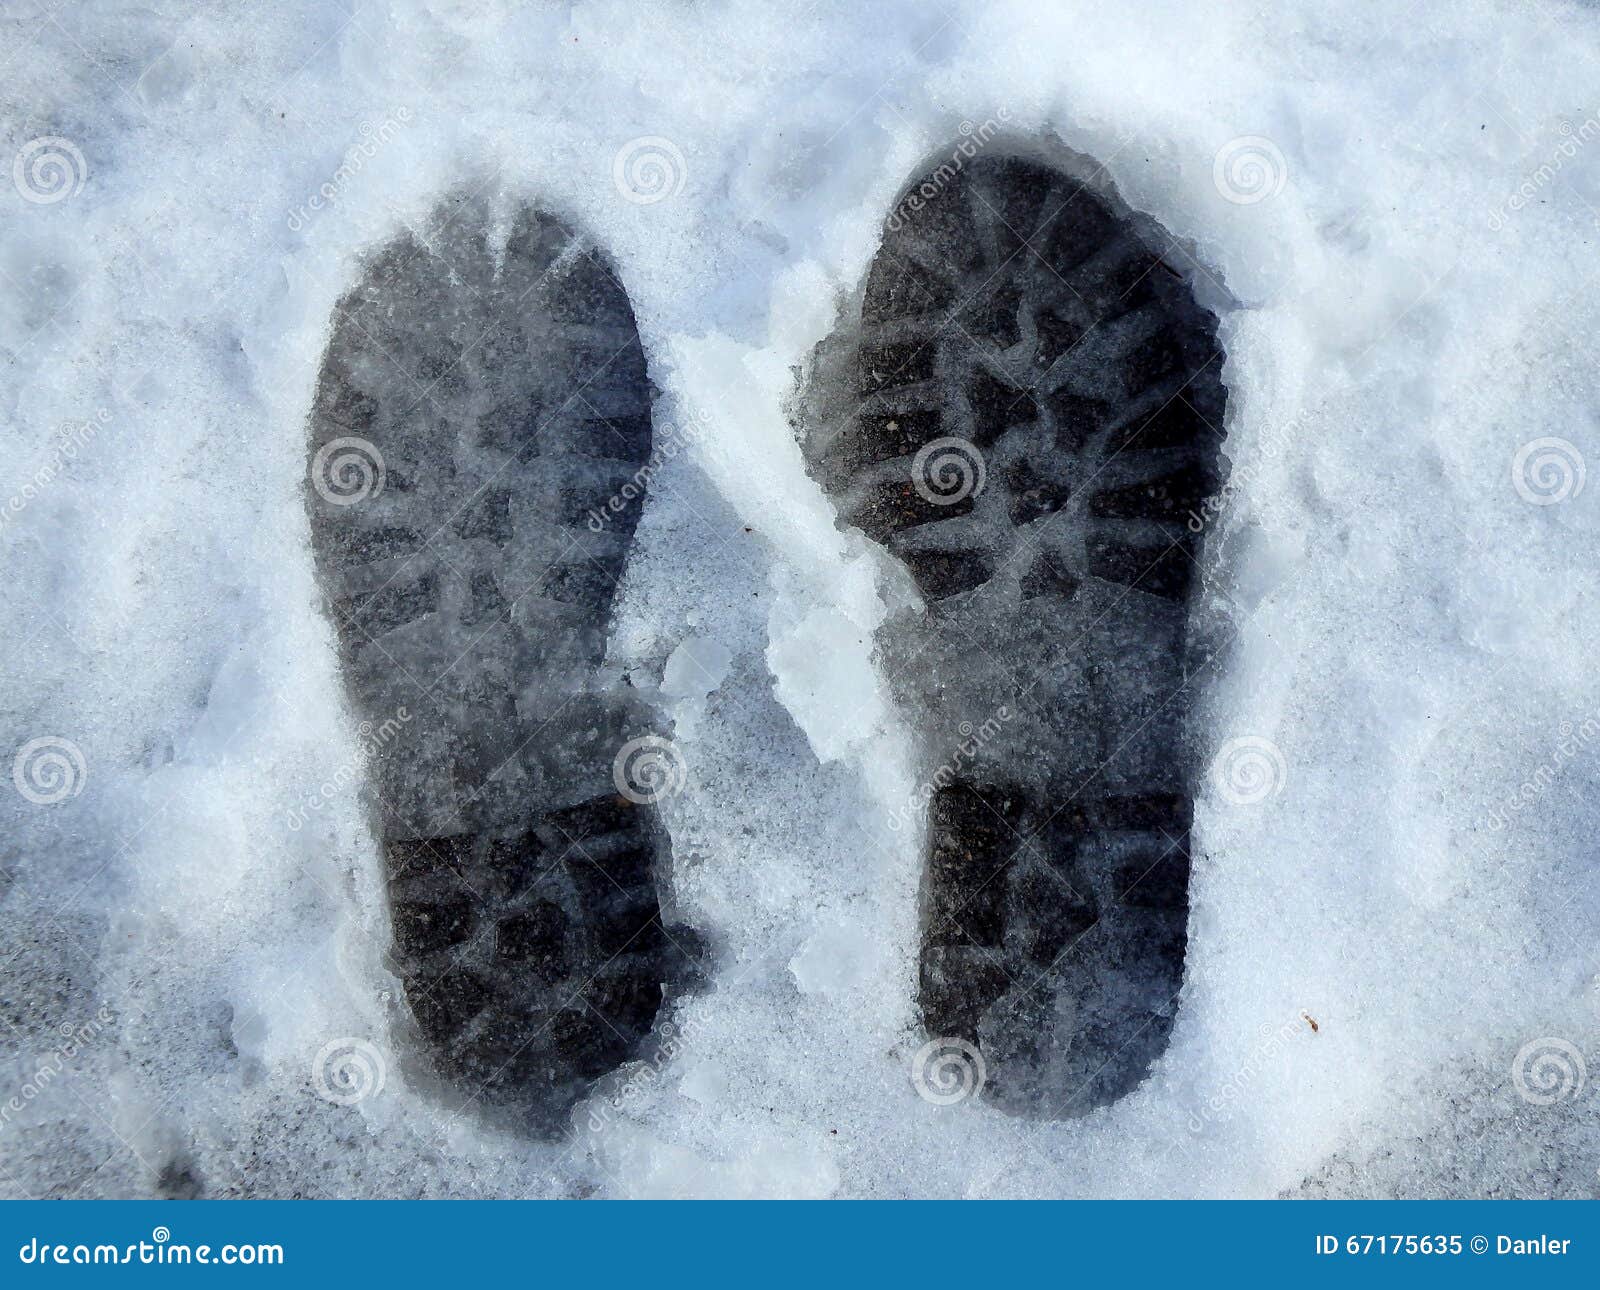 Следы предметы следы вещества. Следы отображения трасология. Следы обуви на снегу криминалистика. Отпечаток обуви на снегу. Следы ног трасология.